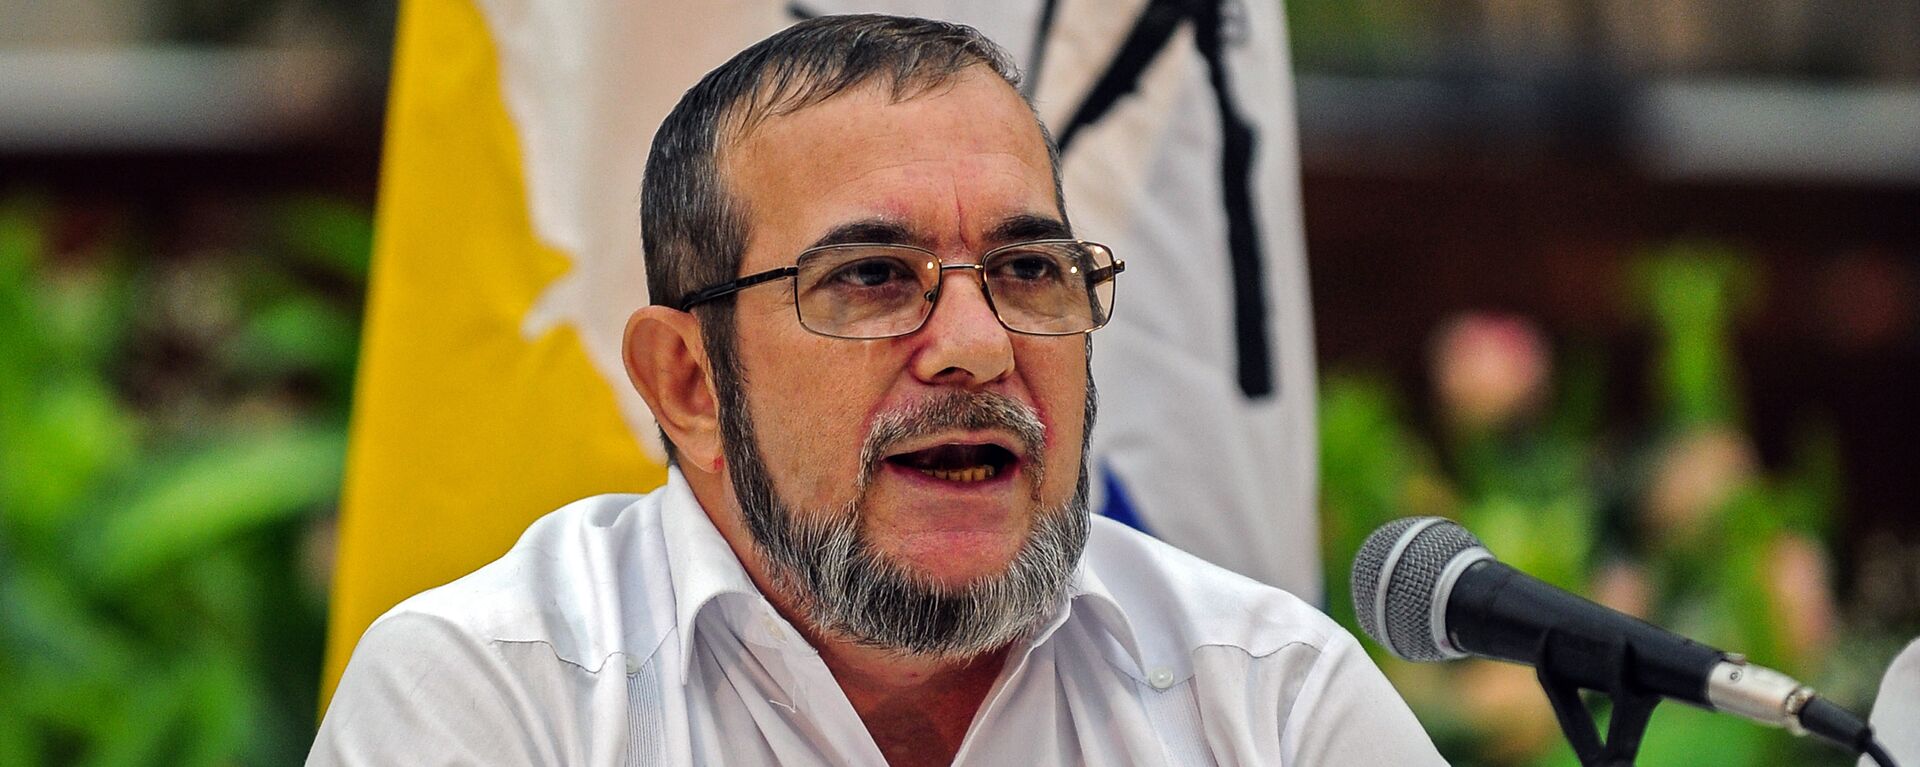 Rodrigo Londoño Echeverri, alias 'Timochenko', máximo líder de las FARC - Sputnik Mundo, 1920, 28.01.2021